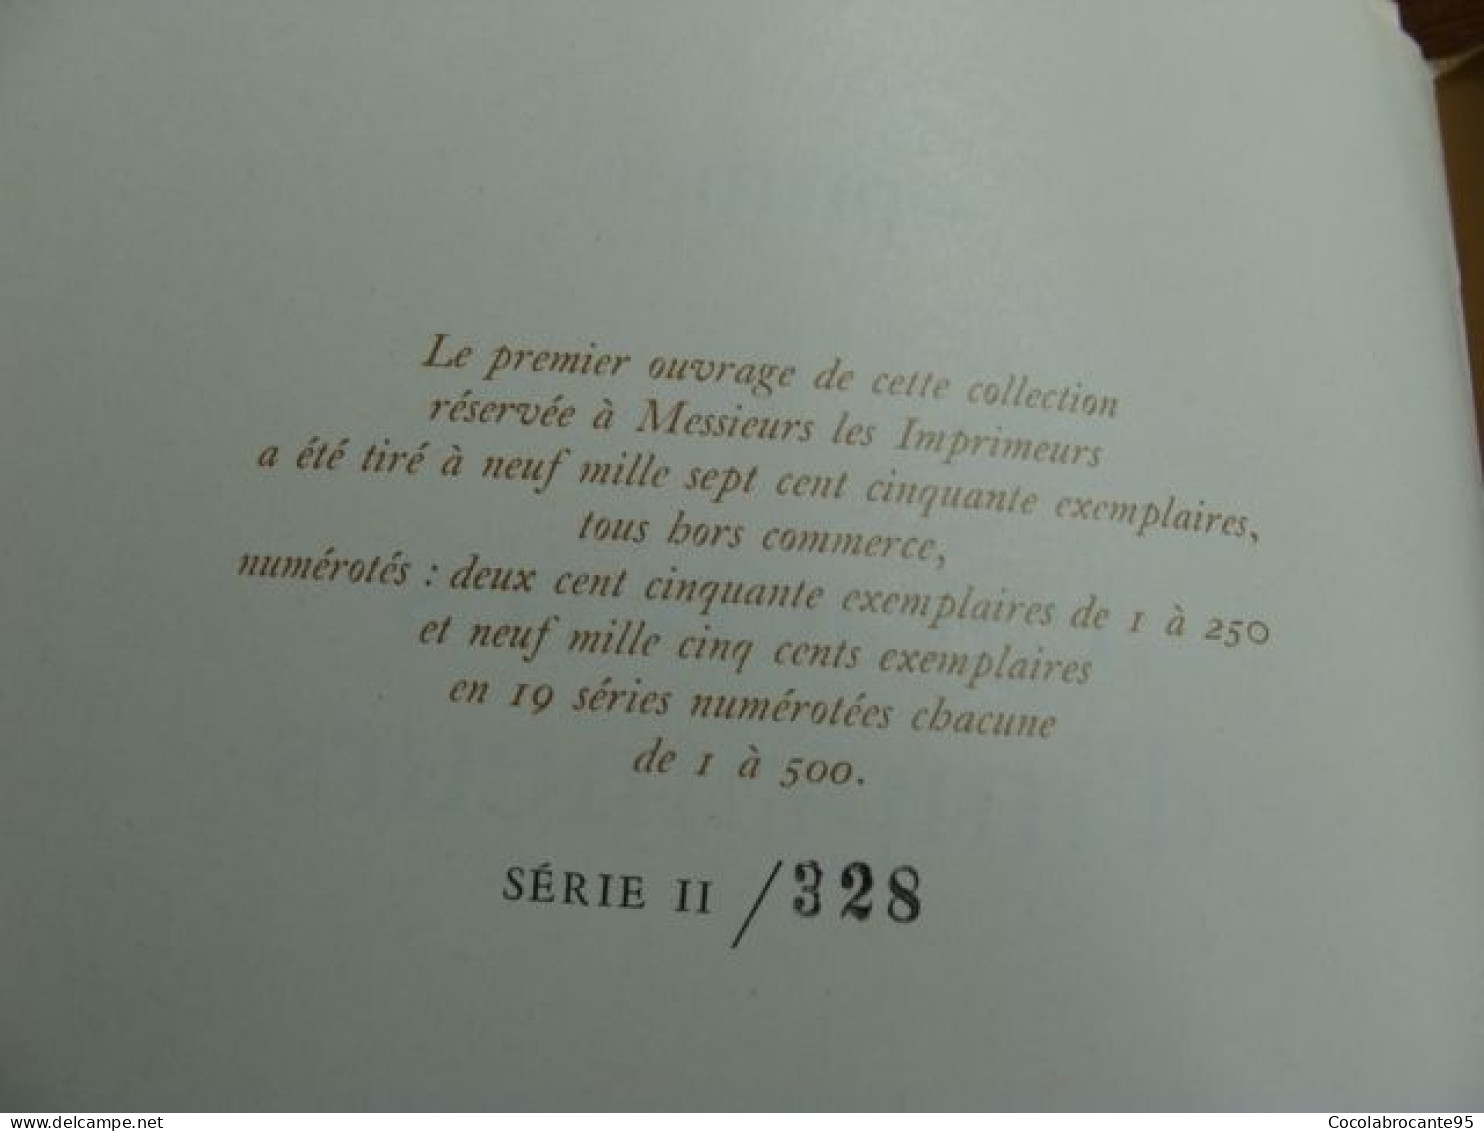 Livres Sur L'imprimerie "Imprimer Exprimer" 60's - Sciences